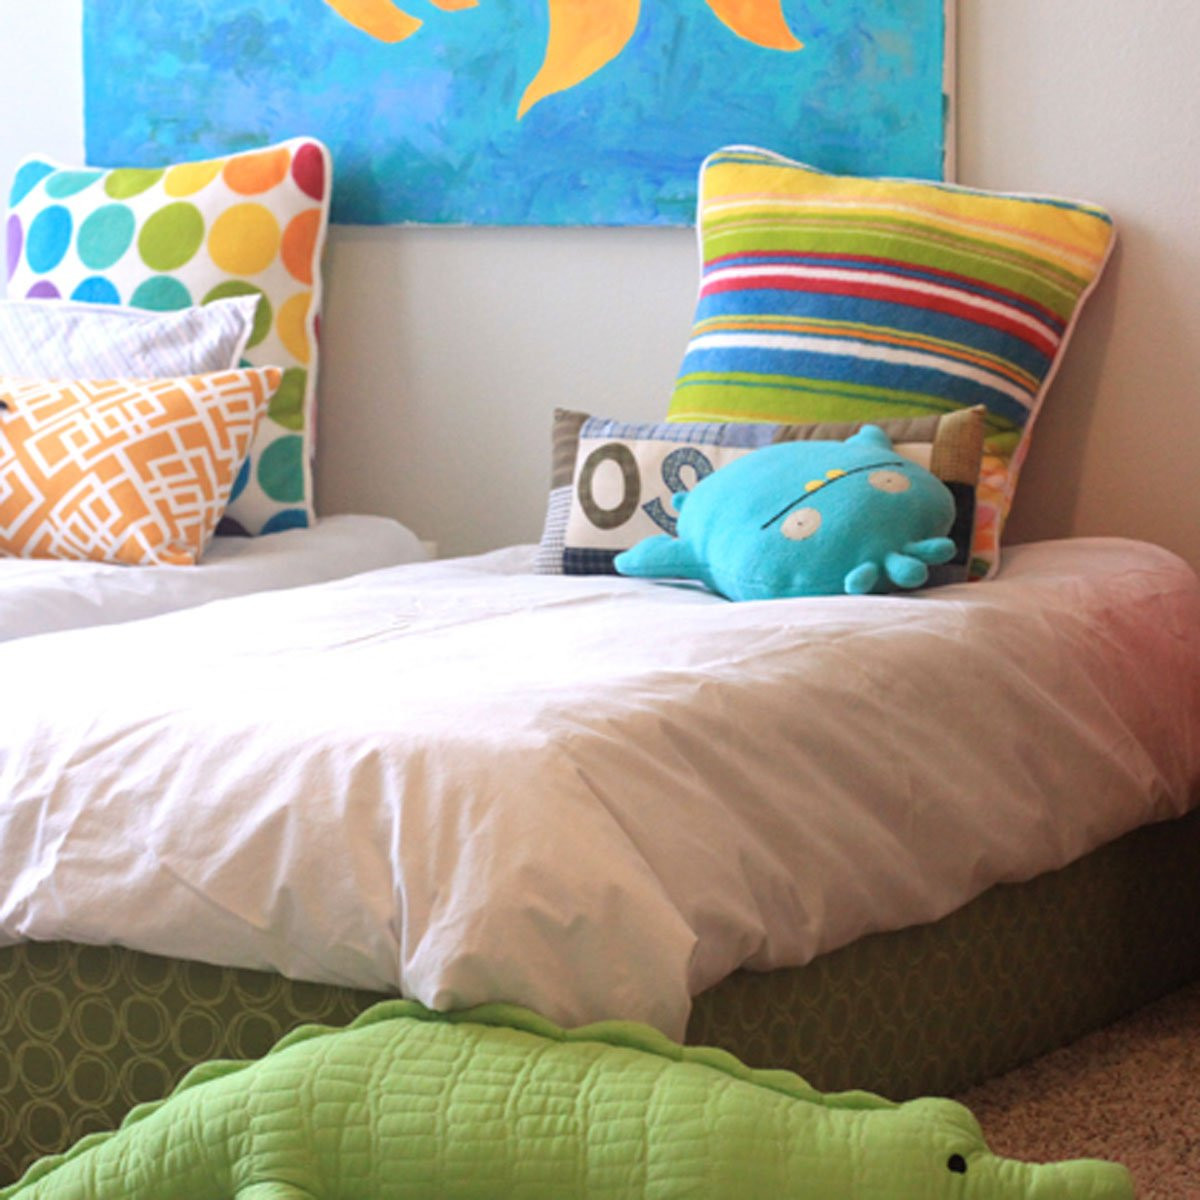 DIY Toddler Platform Bed
 10 Awesome DIY Platform Bed Designs — The Family Handyman